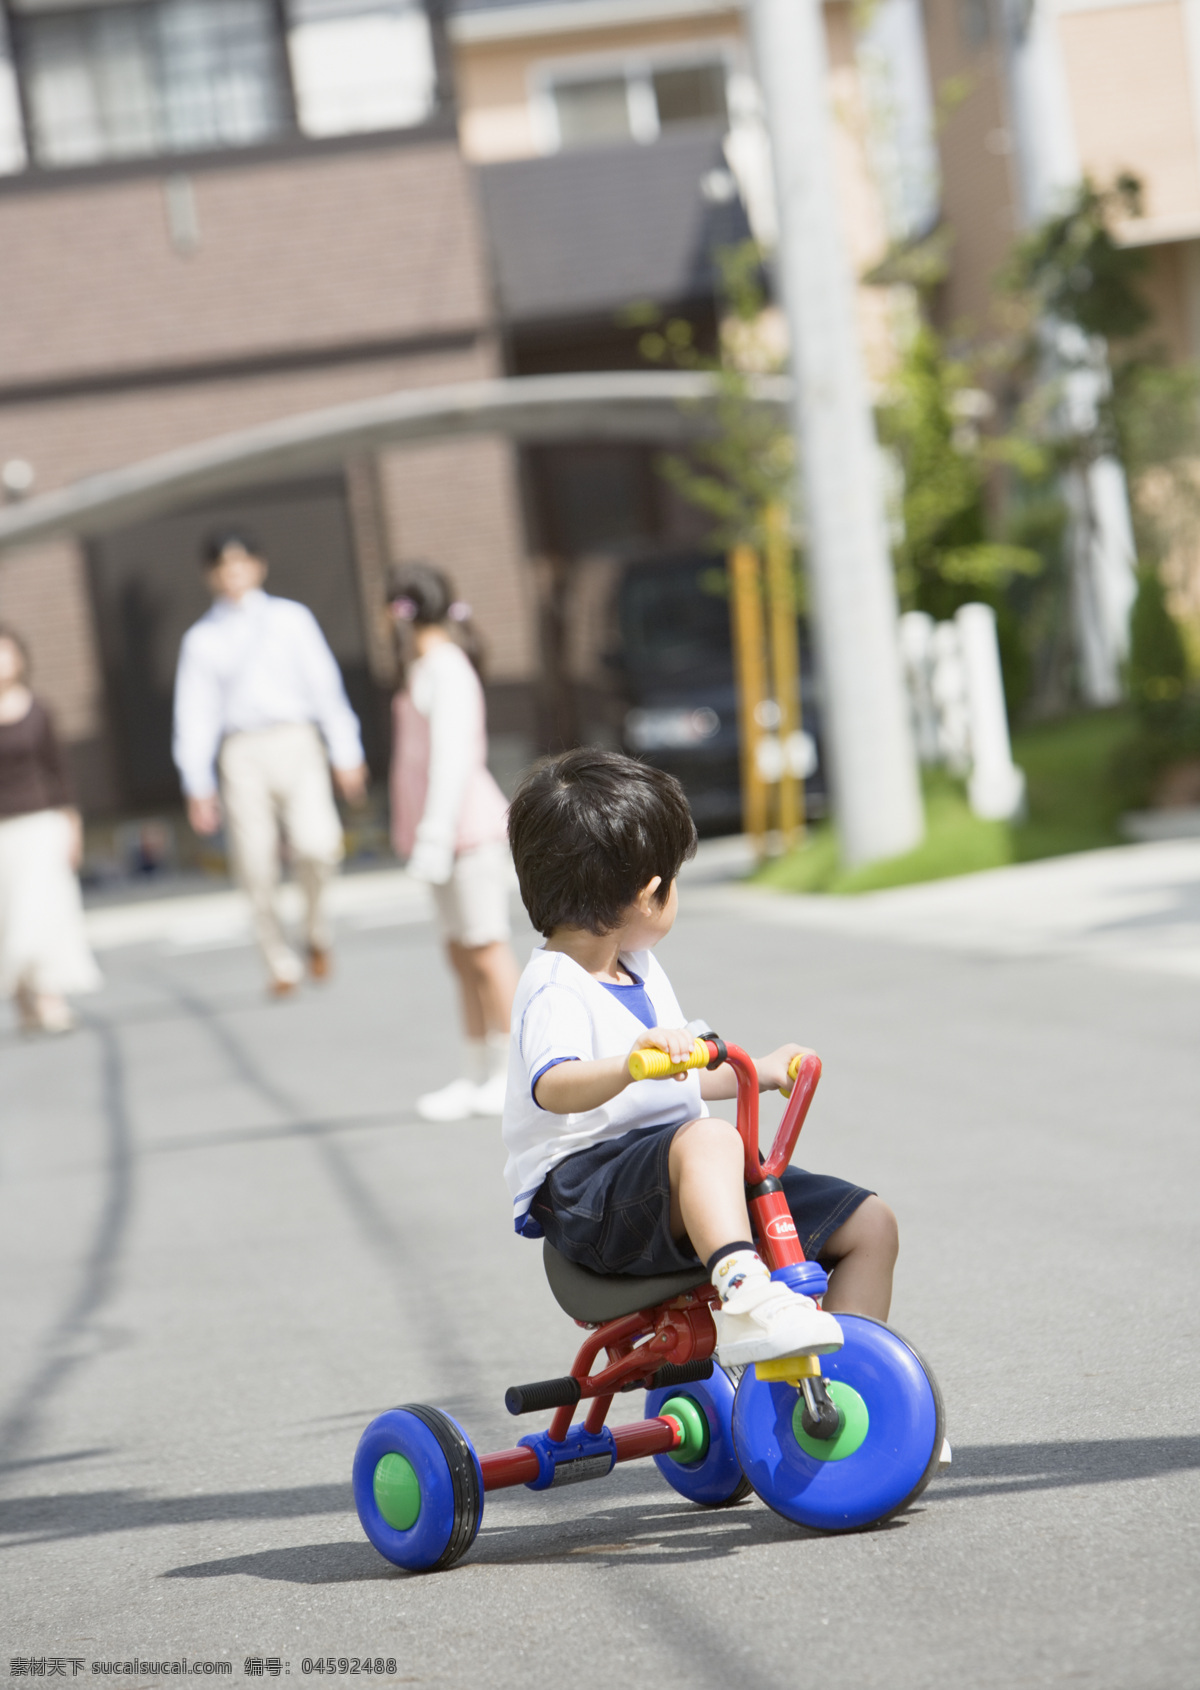 骑 童车 小 男孩 快乐家庭 城郊家庭 温馨一家 幸福家庭 可爱 儿童 小男孩 骑车 自行车 摄影图 高清图片 生活人物 人物图片